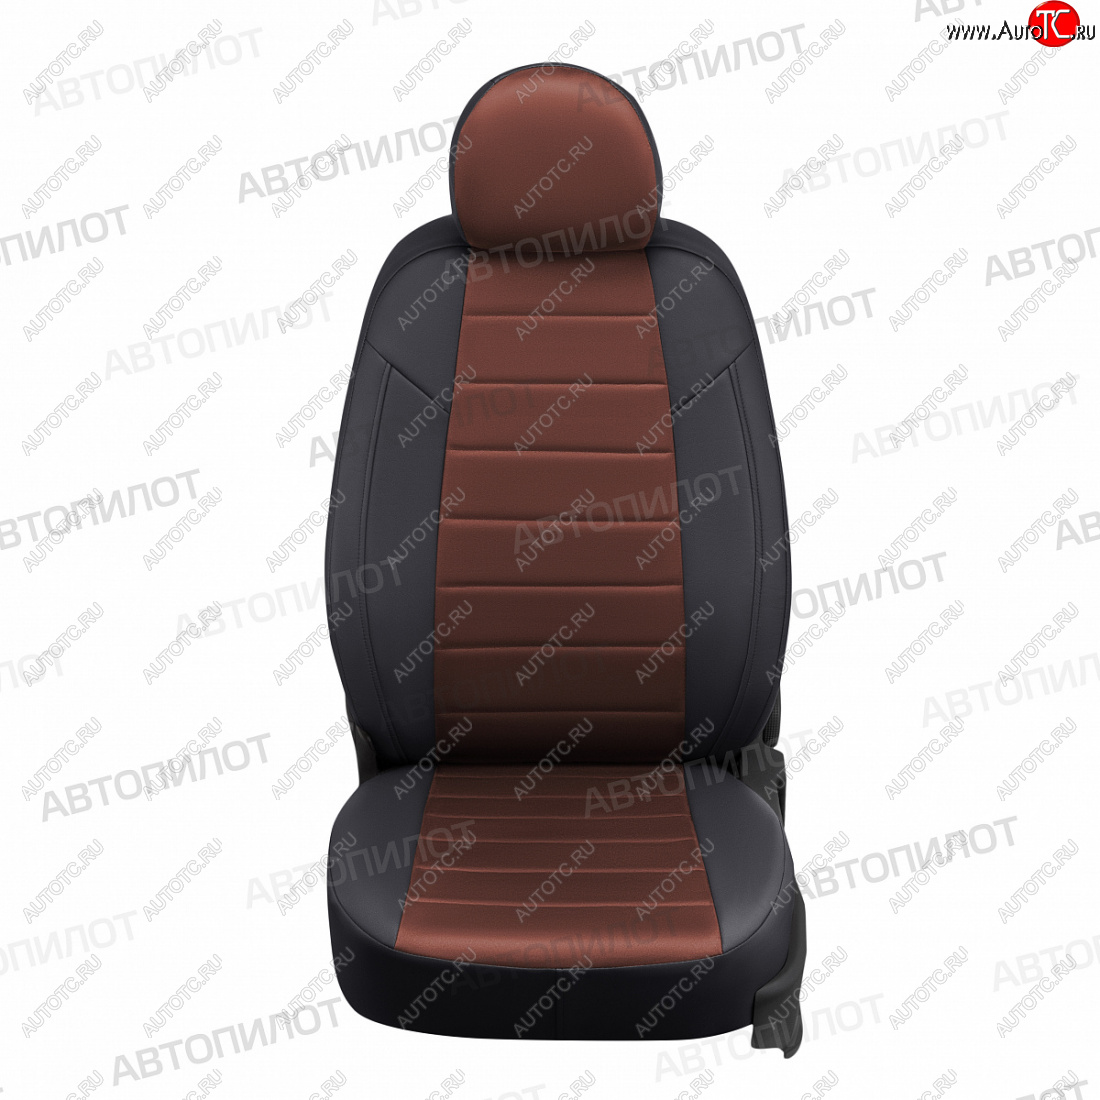 13 449 р. Чехлы сидений (экокожа/алькантара, 60/40) Автопилот  Hyundai Accent  седан ТагАЗ (2001-2012) (черный/шоколад)